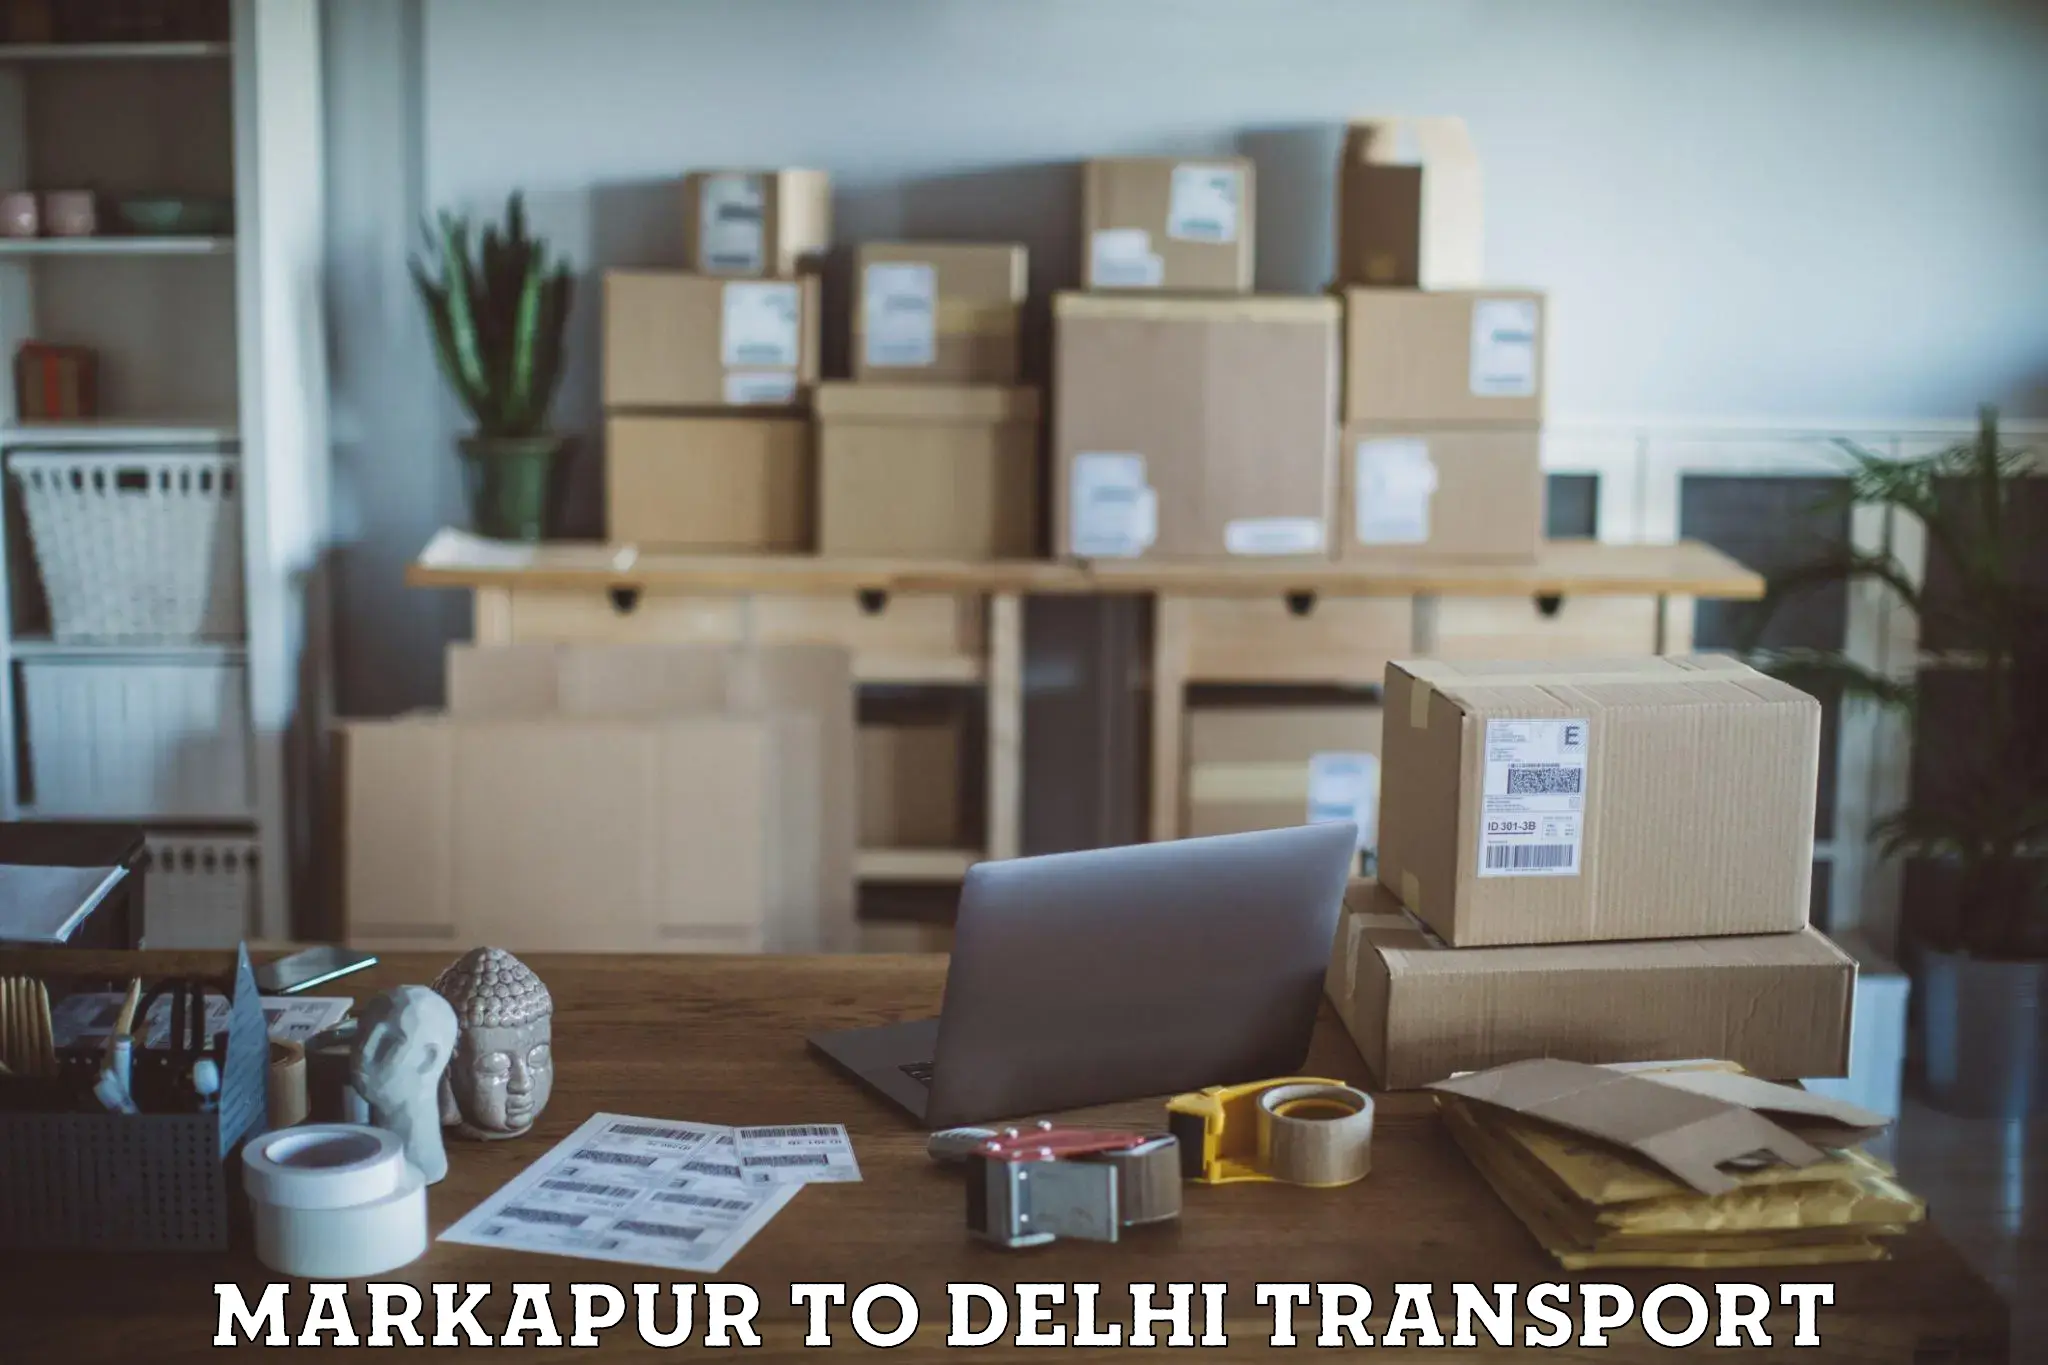 Pick up transport service Markapur to Delhi Technological University DTU